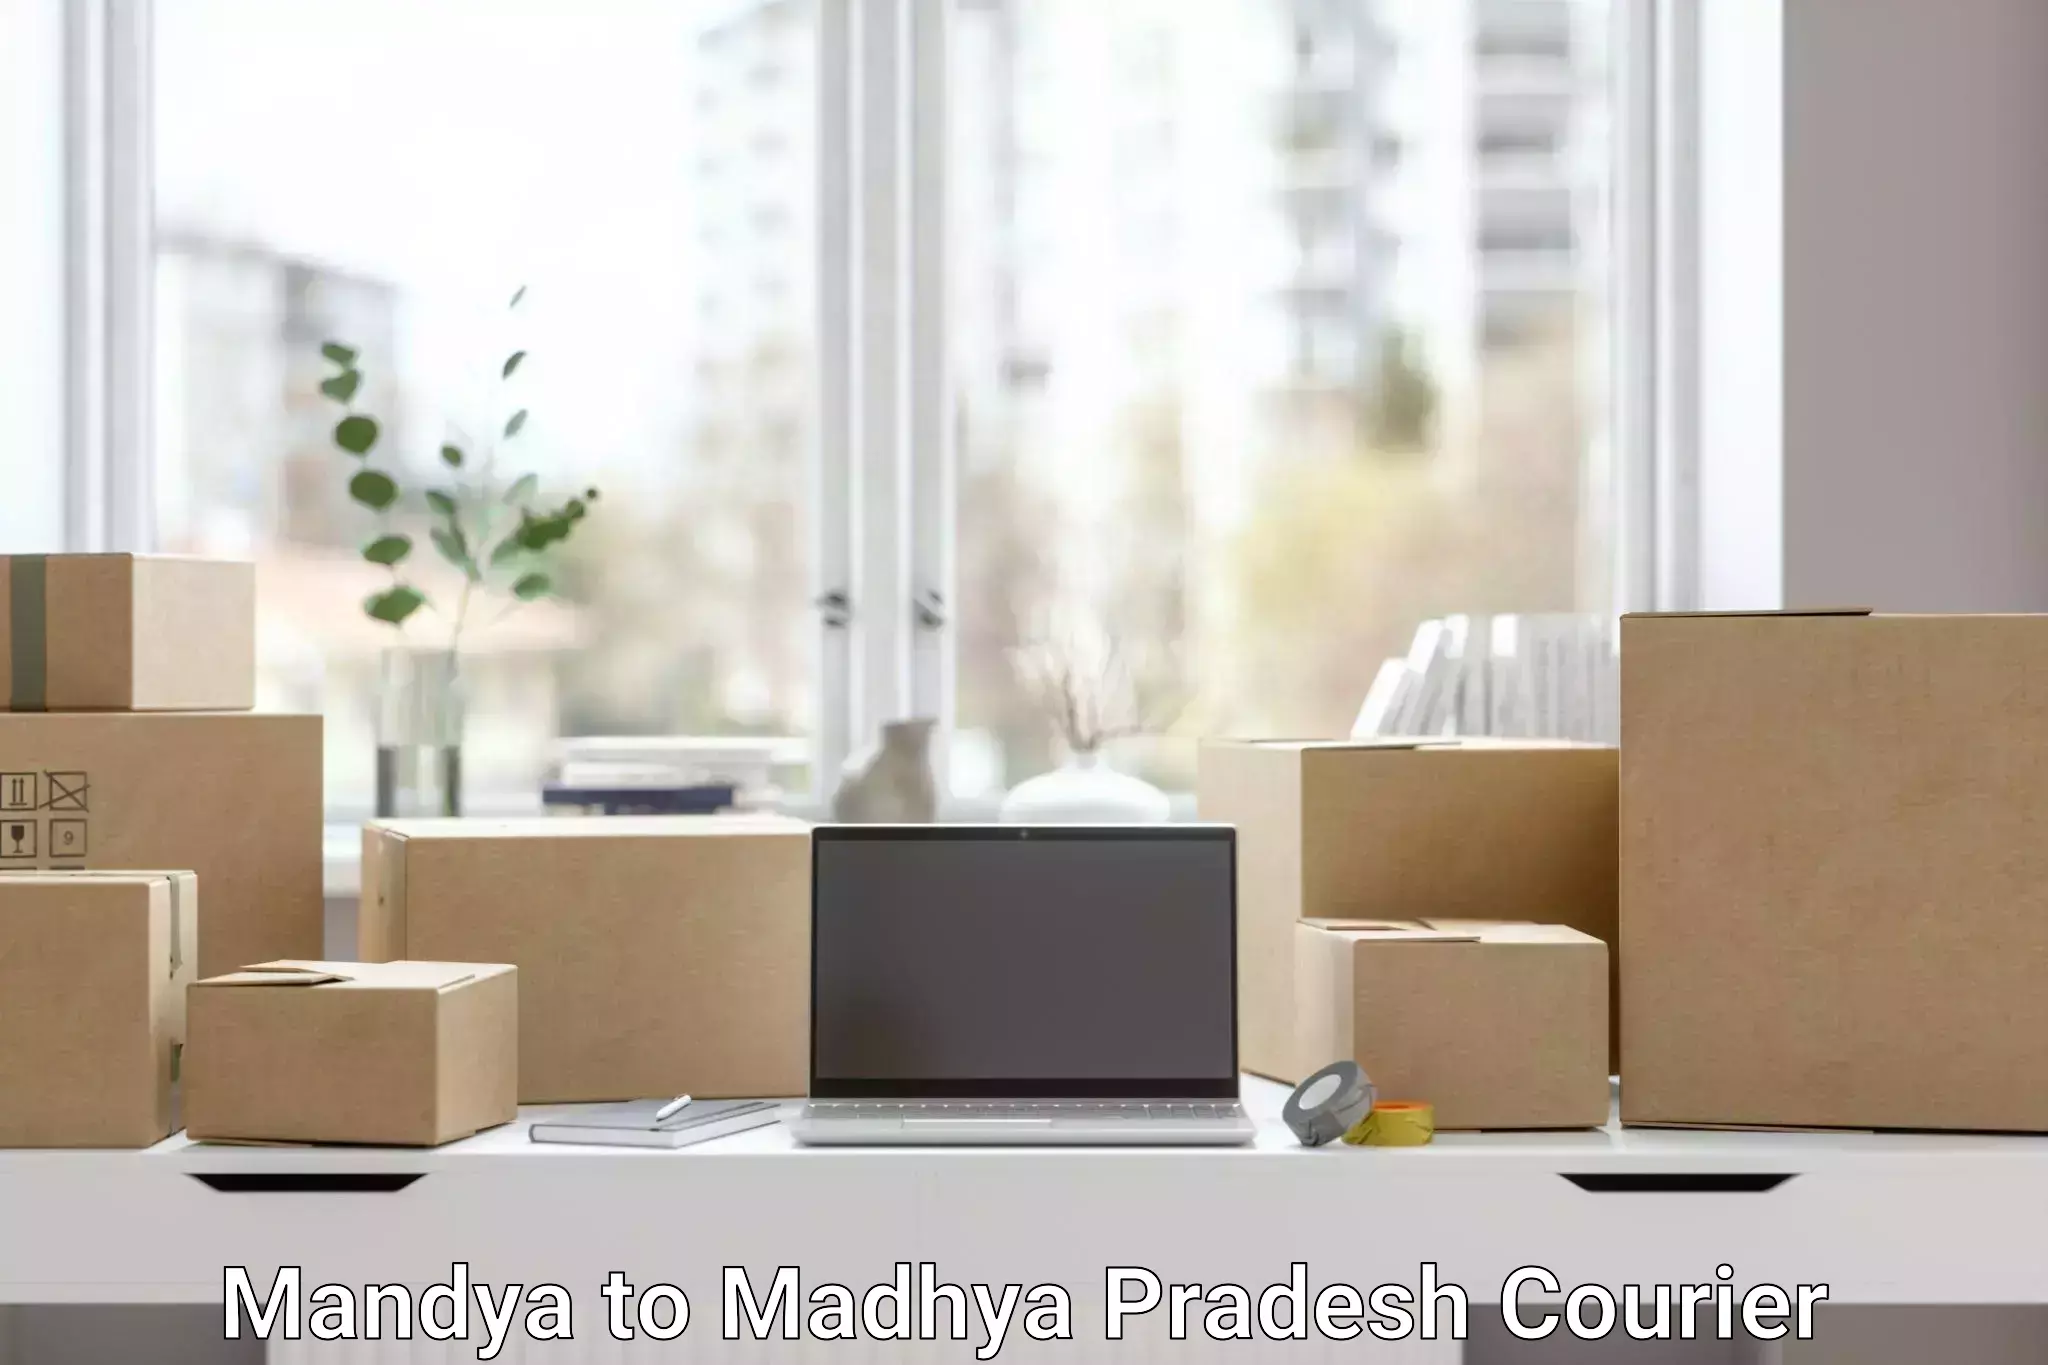 Advanced shipping services Mandya to Khandwa